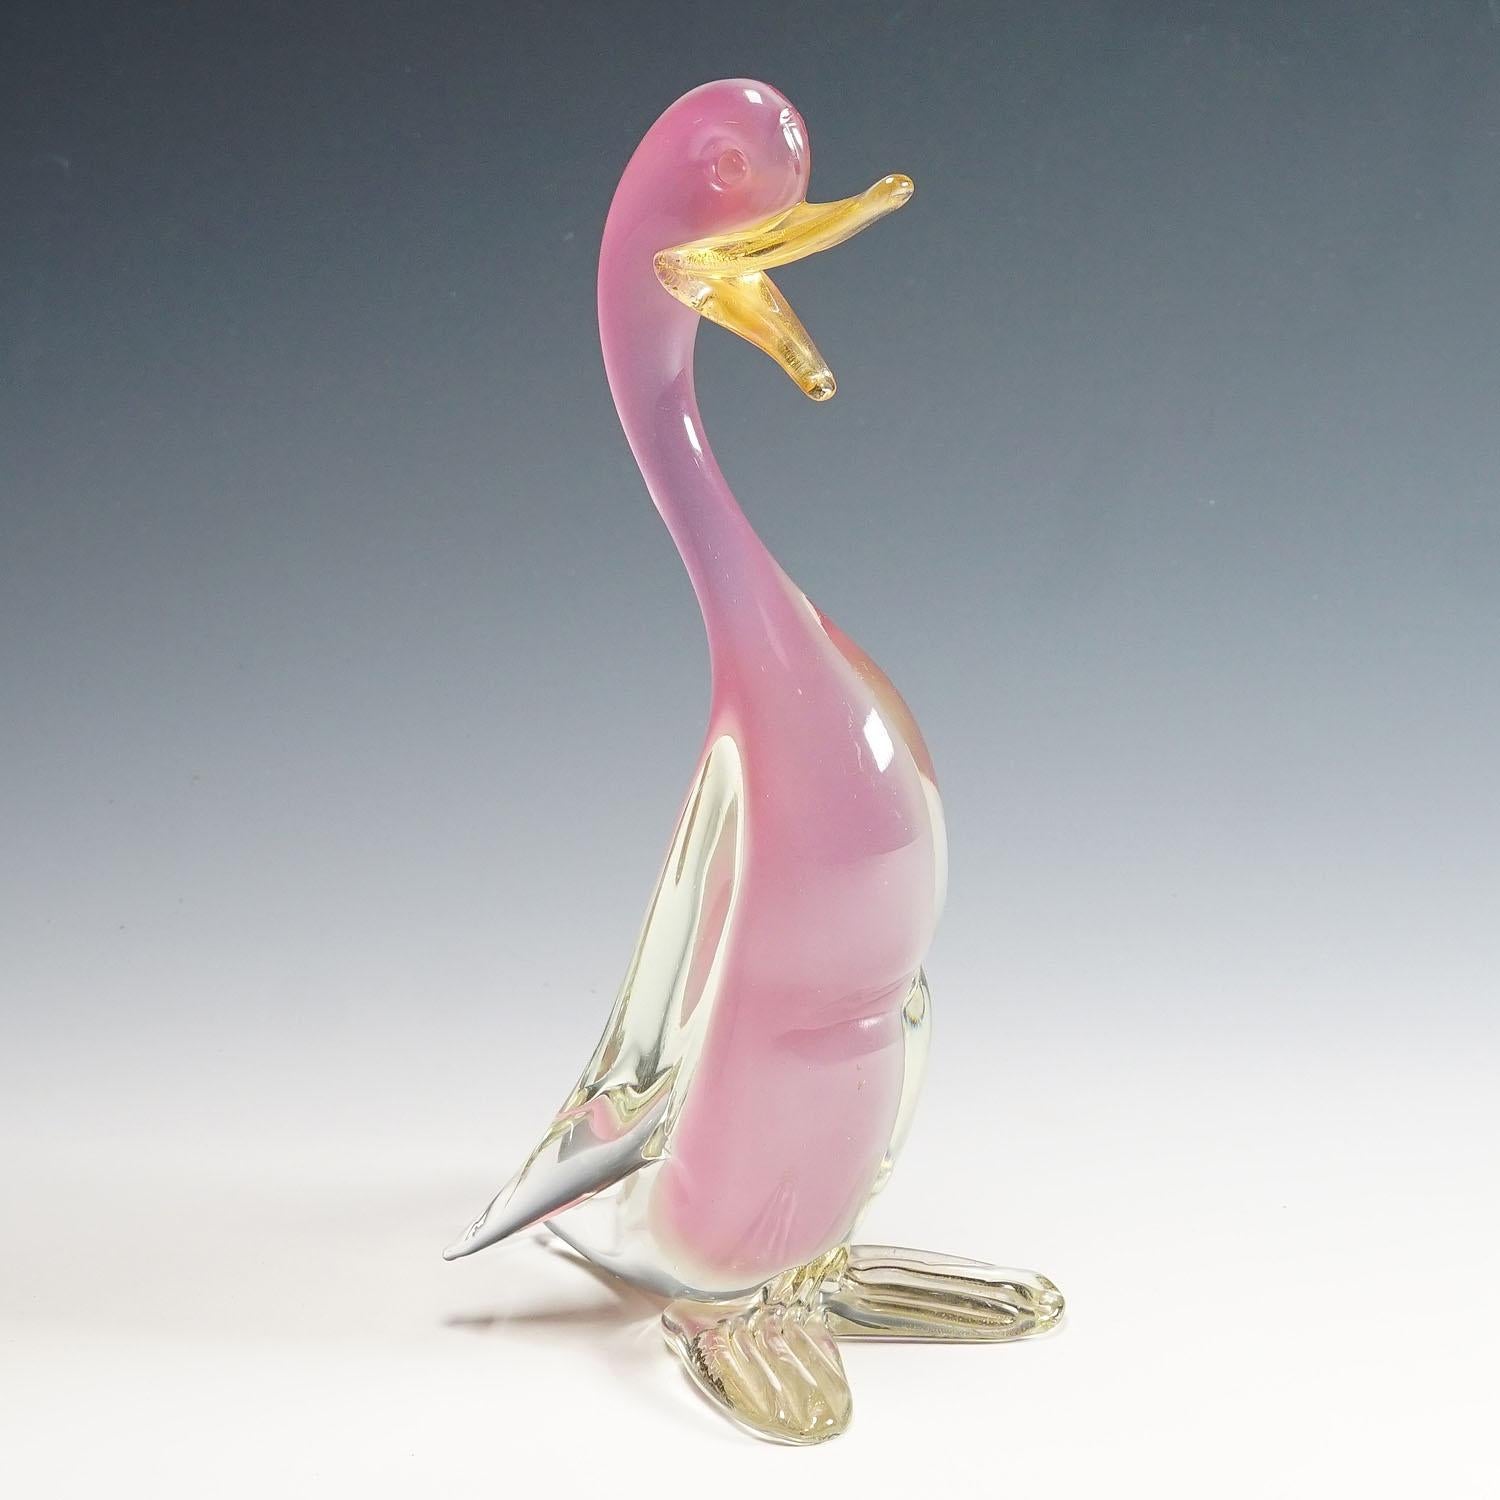 Italian Archimede Seguso Alabastro Art Glass Duck, Murano Italy 1950s For Sale